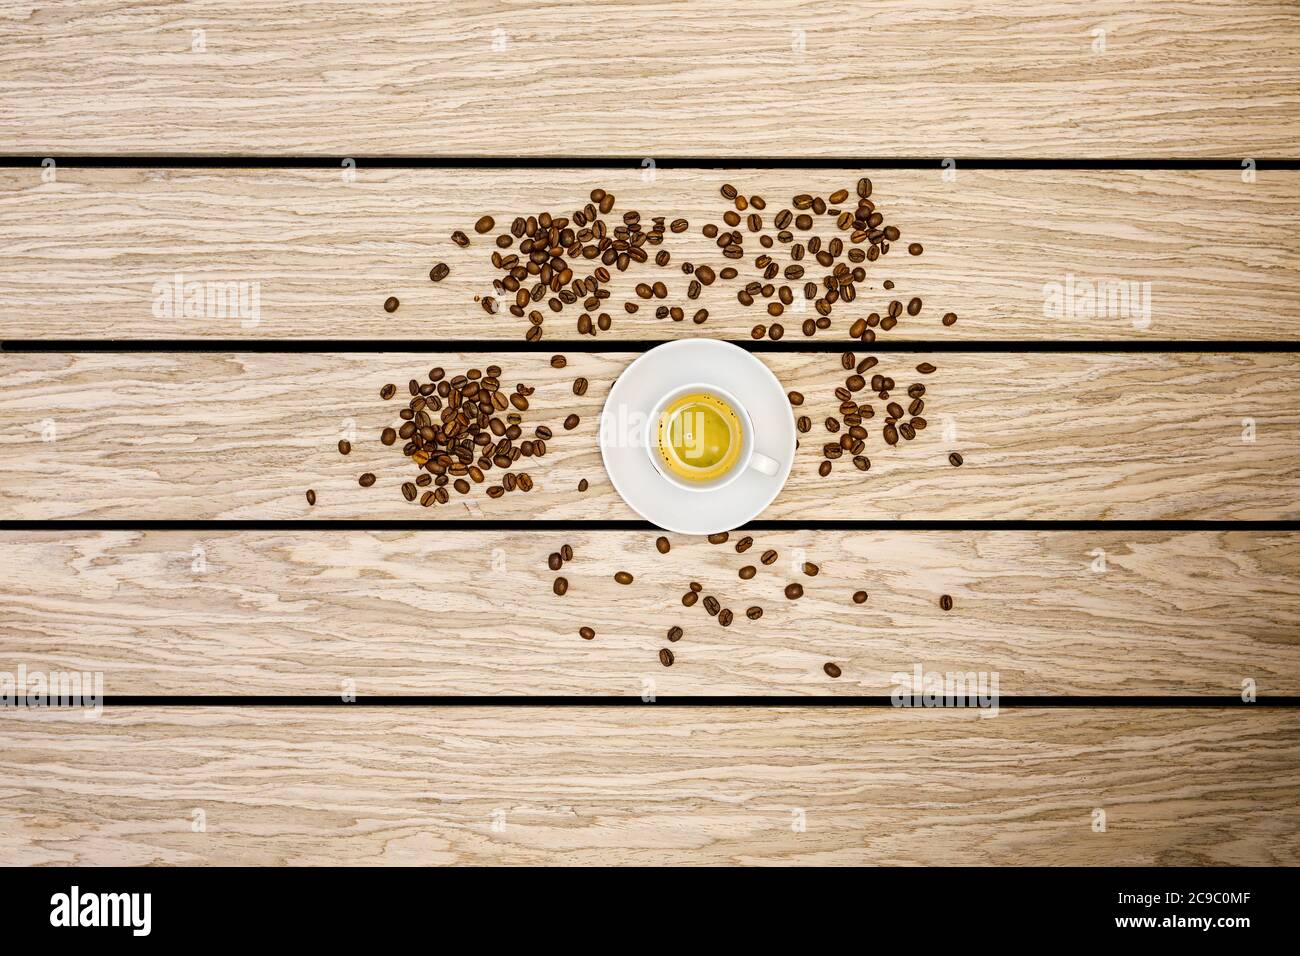 Kaffee - Getränk und Geröstete Kaffeebohnen auf einem alten Holztisch aus Graueiche Stock Photo